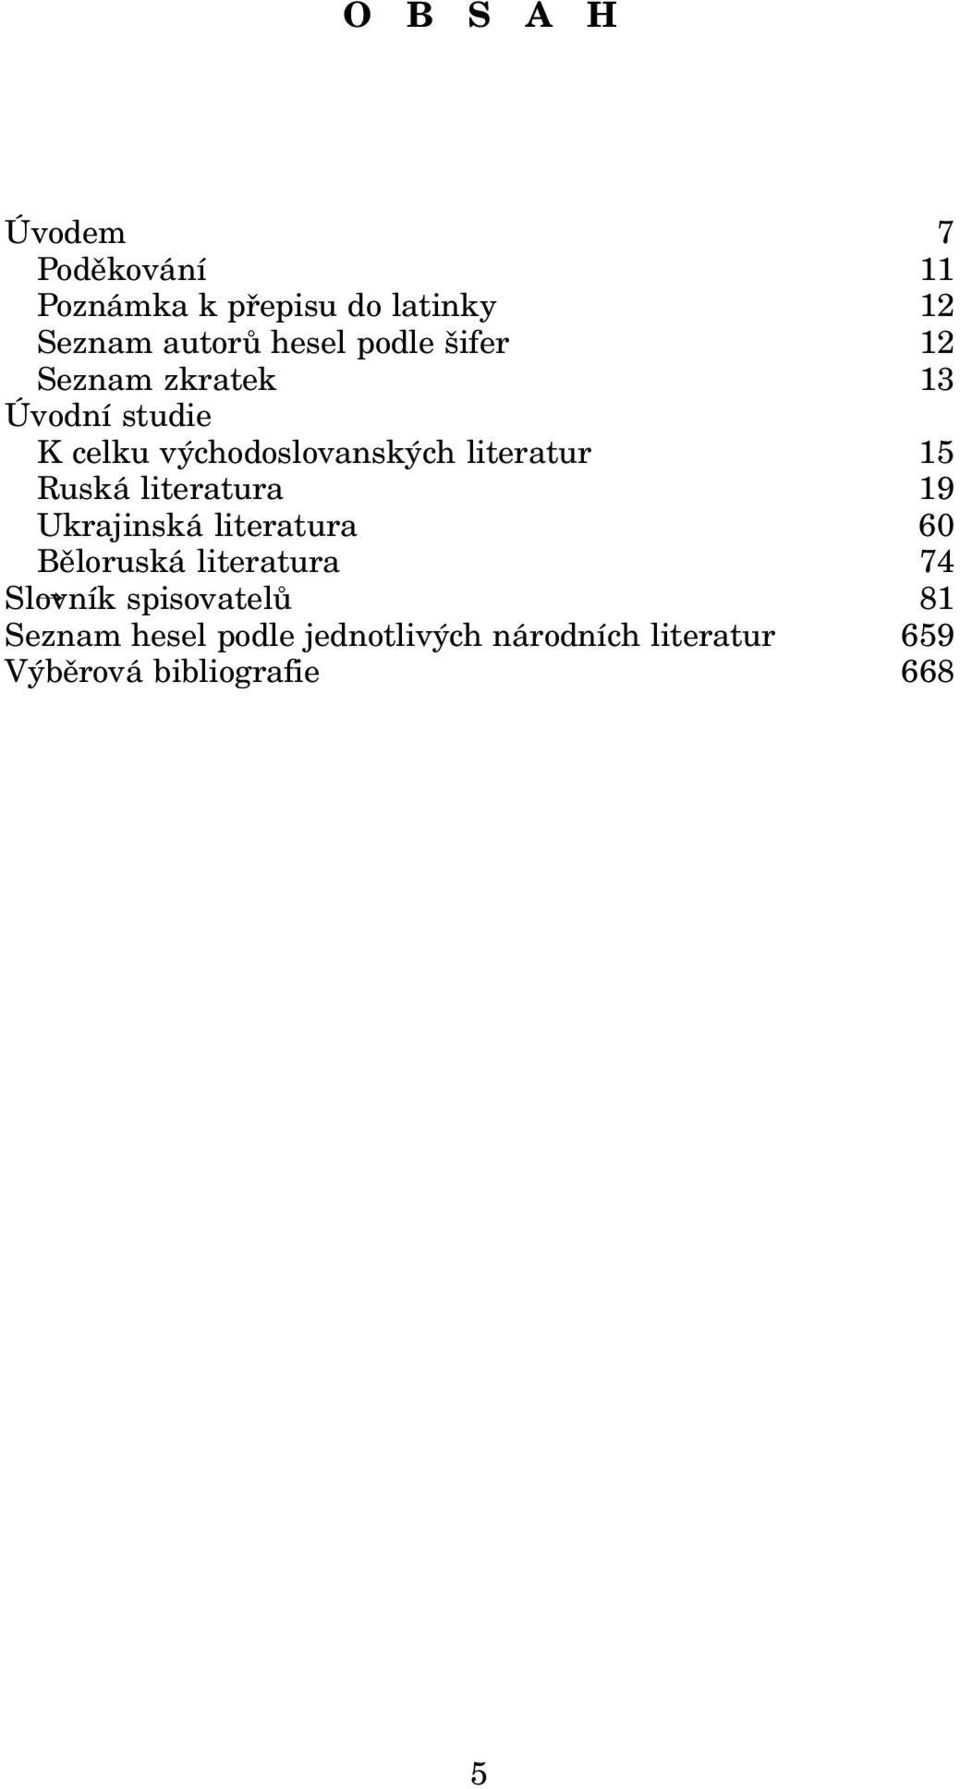 literatura Ukrajinská literatura Běloruská literatura 7 11 12 12 13 15 19 60 74